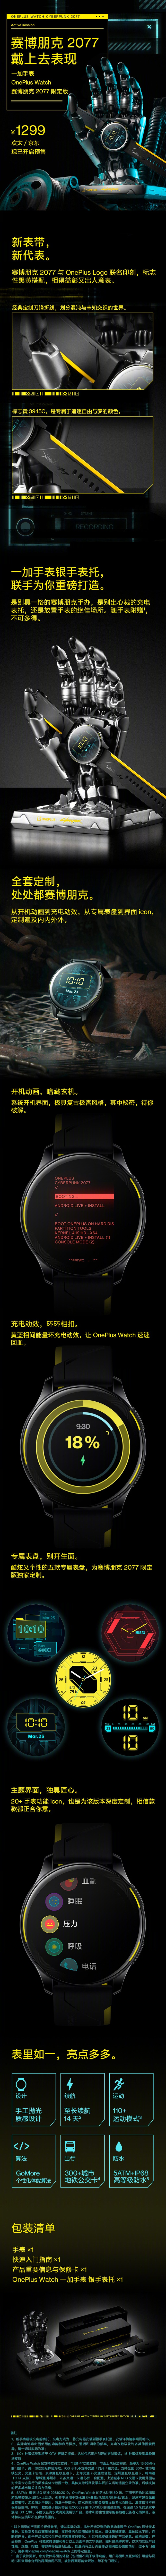 OnePlus Watch Cyberpunk 2077 édition limitée maintenant en précommande en Chine avec un support en forme de main cool